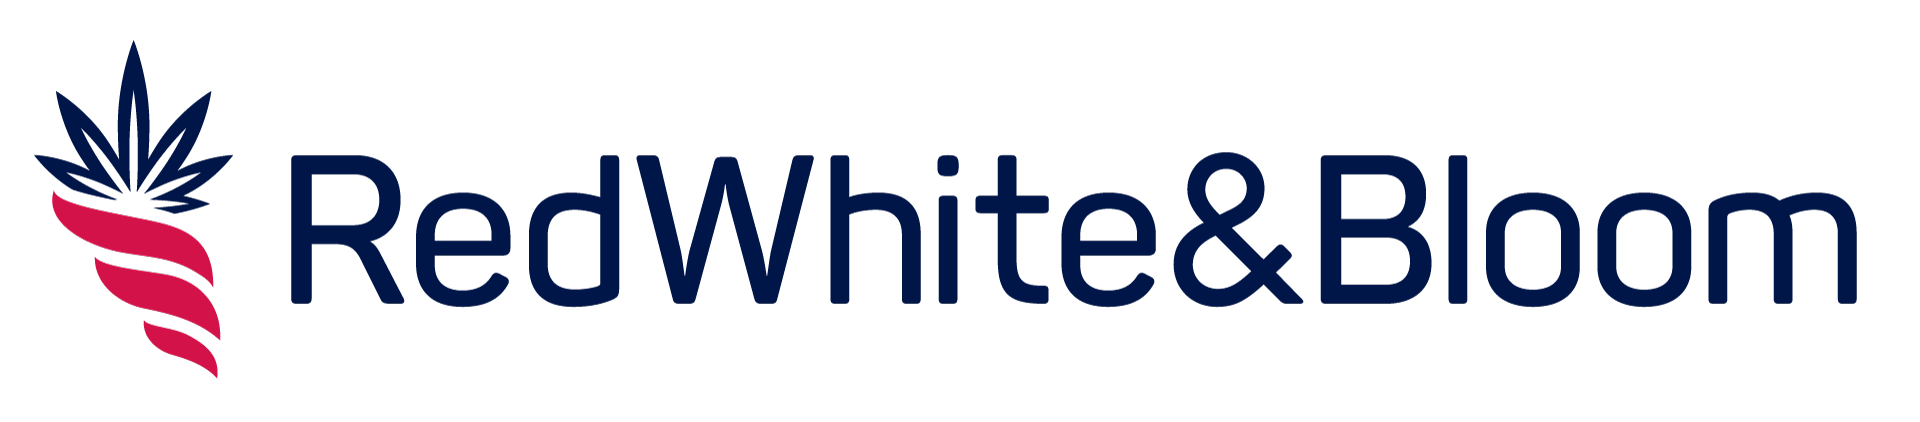 RWB-Wide-Logo.png